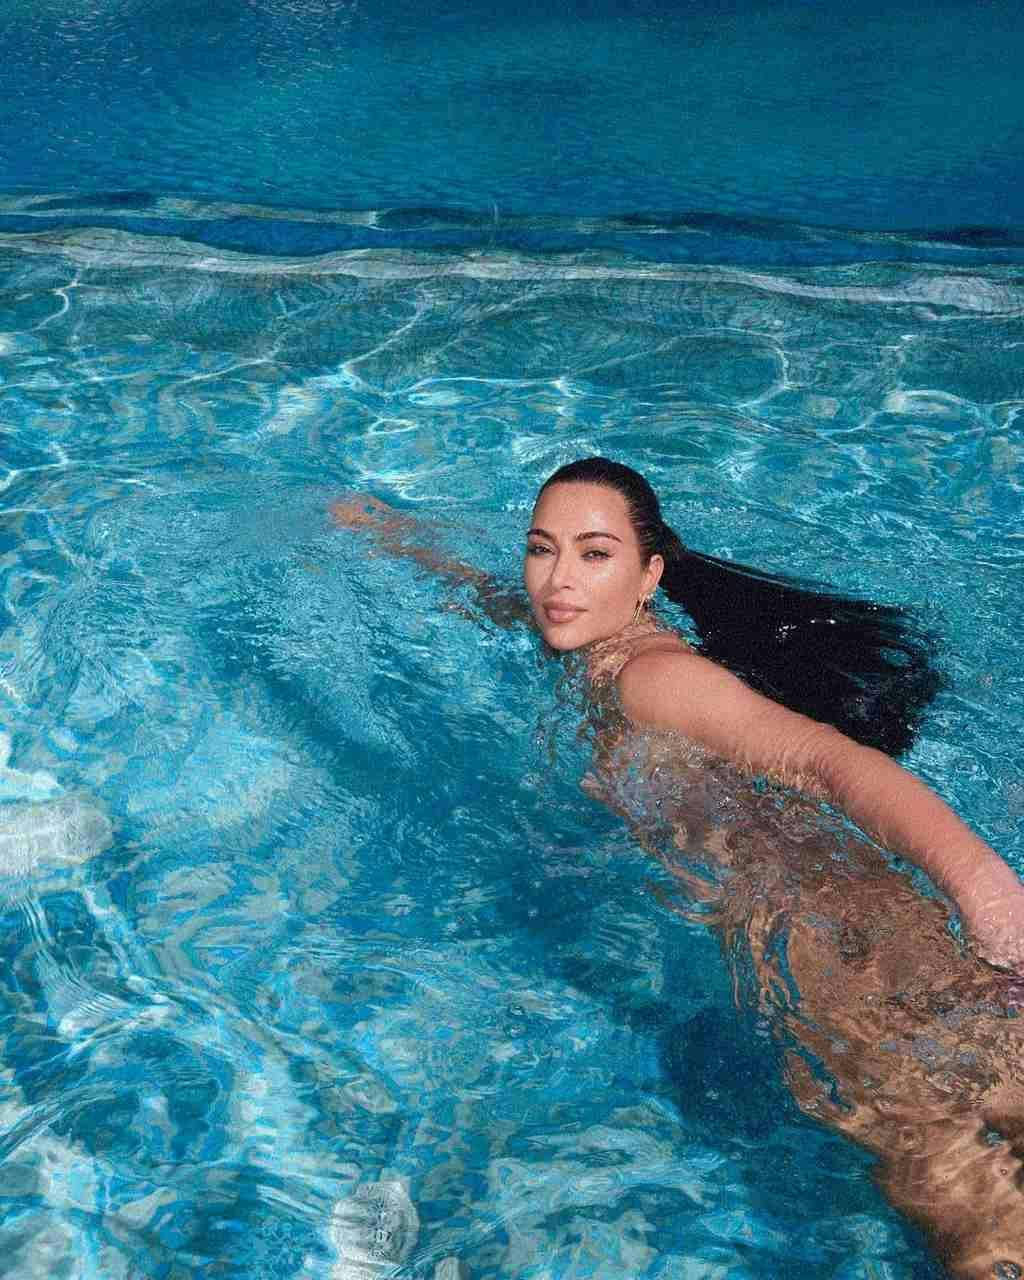 Kim Kardashian swimming in a pool.